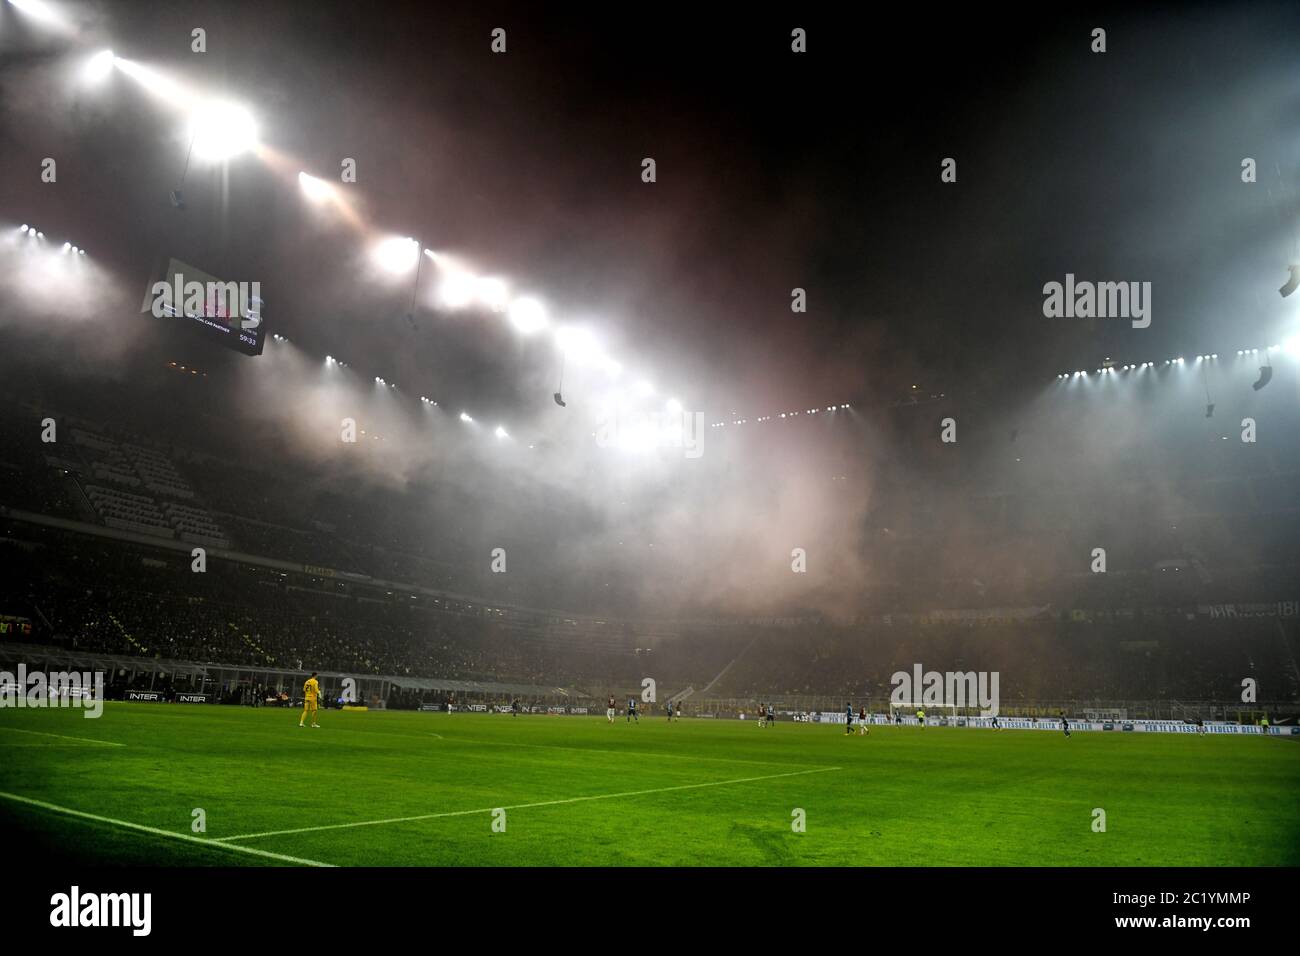 Rauchbomben, die von Fans im fußballstadion von san siro geworfen wurden. Stockfoto